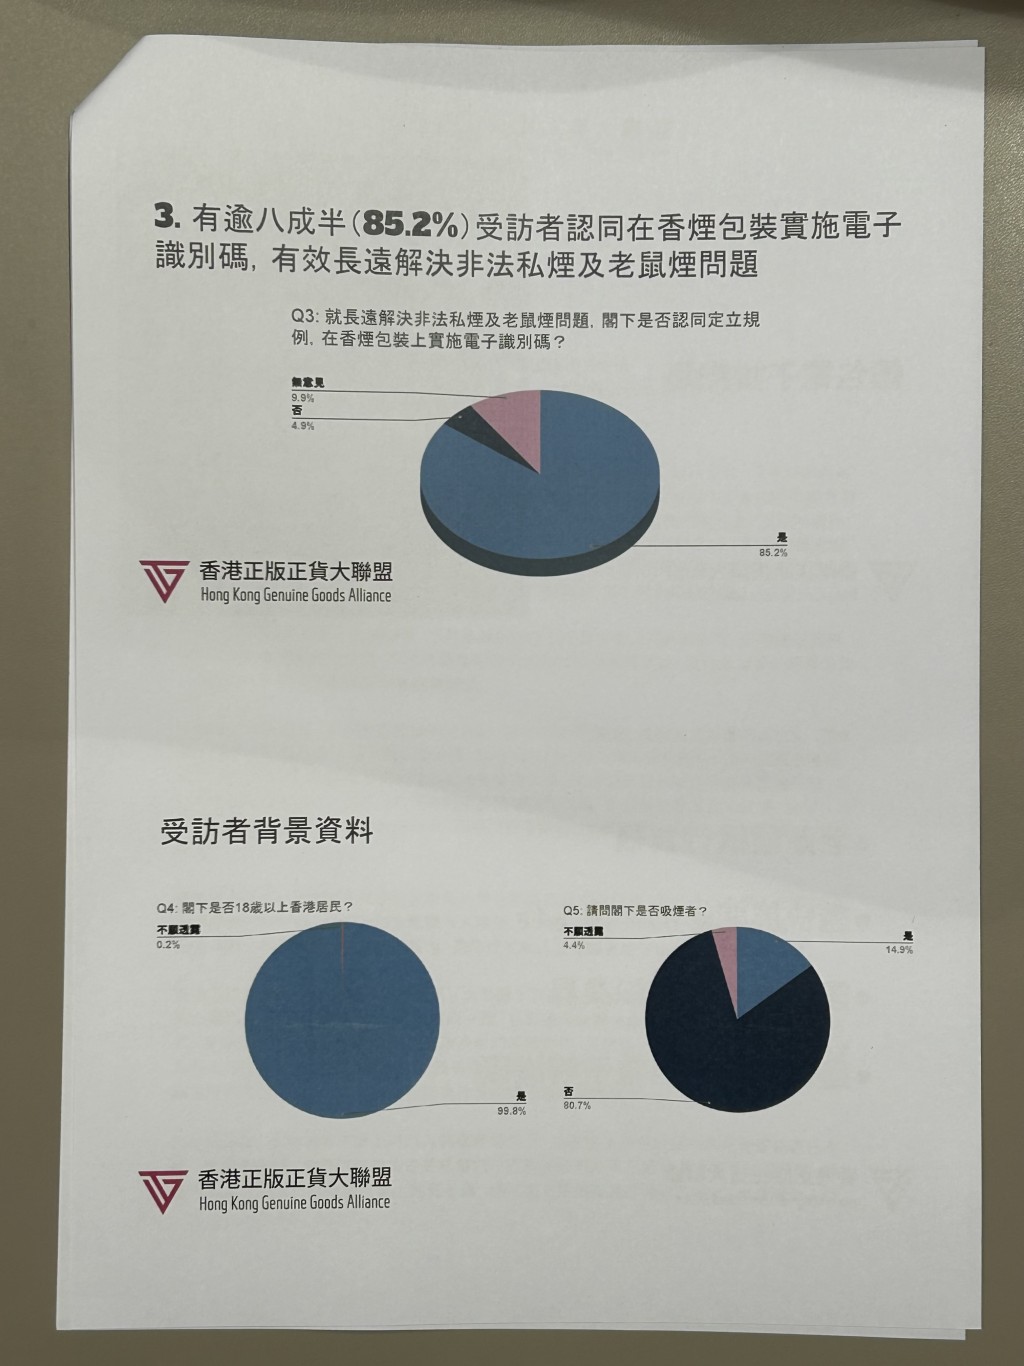 有逾8成半受訪者認同在香港包裝實施電子識別碼，有效長遠解決非法私煙及老鼠煙問題。